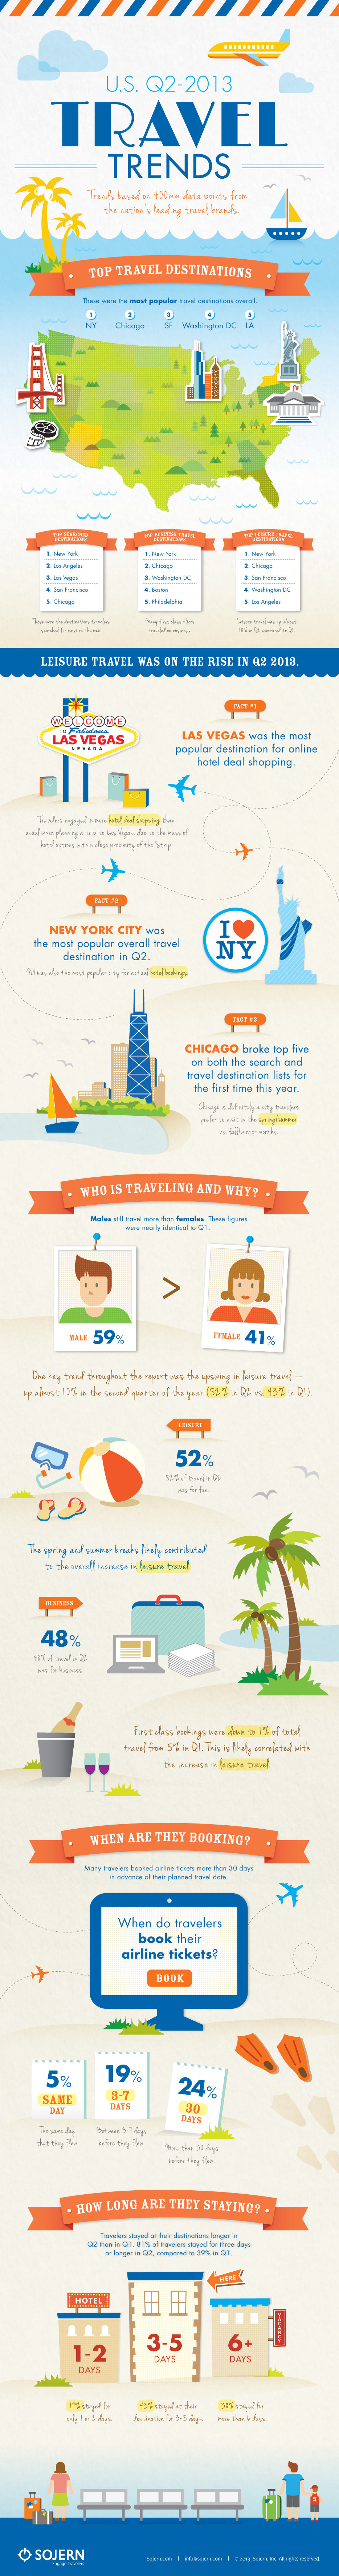 Q2 2013 U.S. Travel Trends